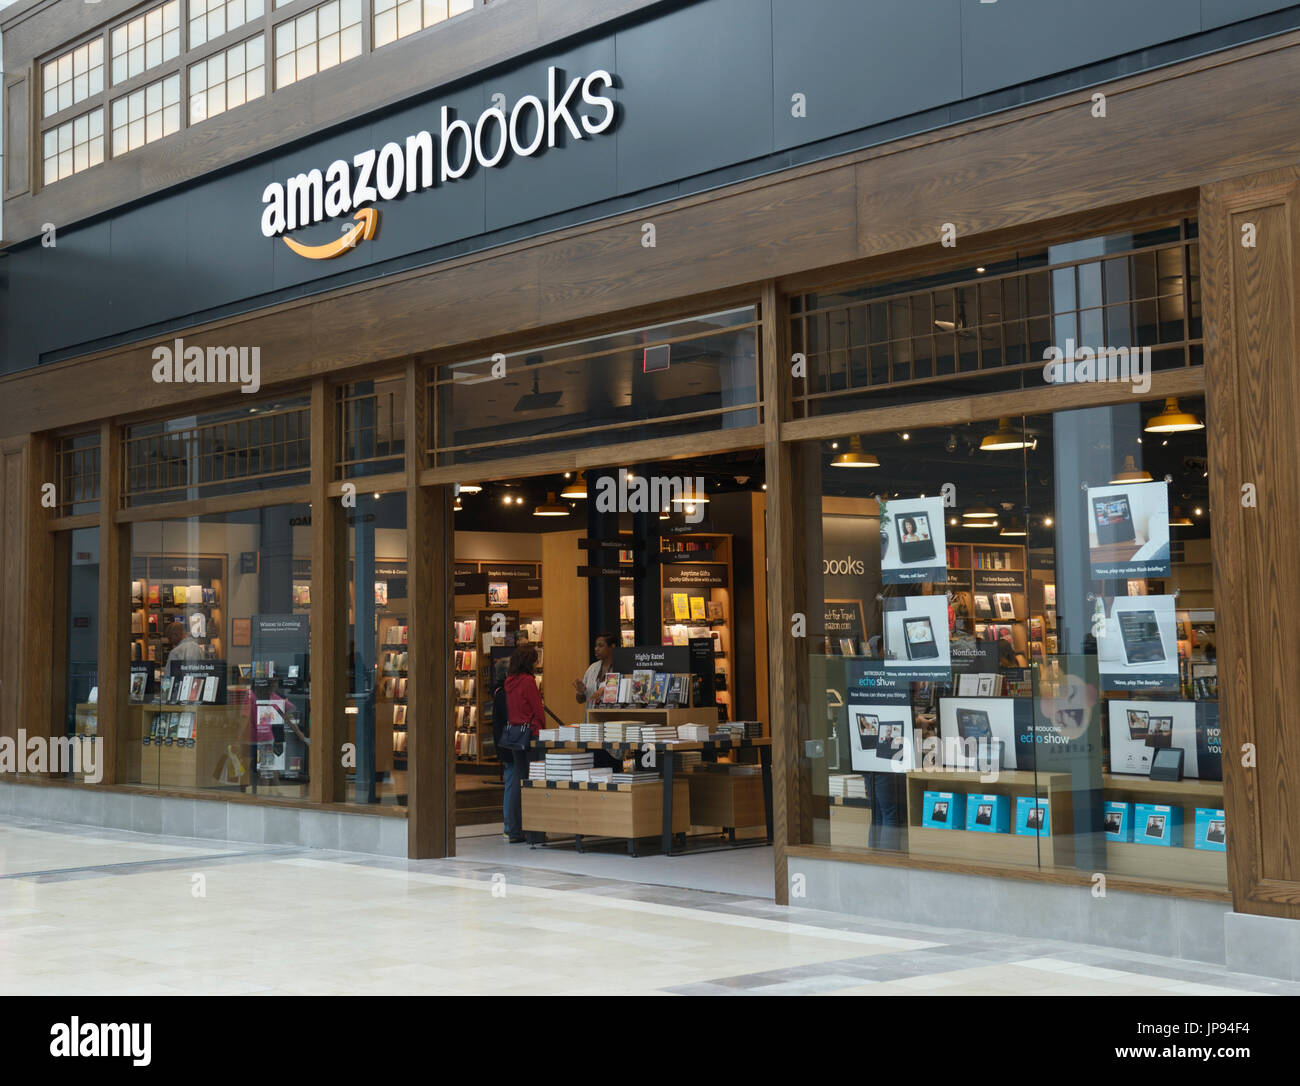 Amazonbooks Retail Store außen in einem Einkaufszentrum, northern NJ Stockfoto